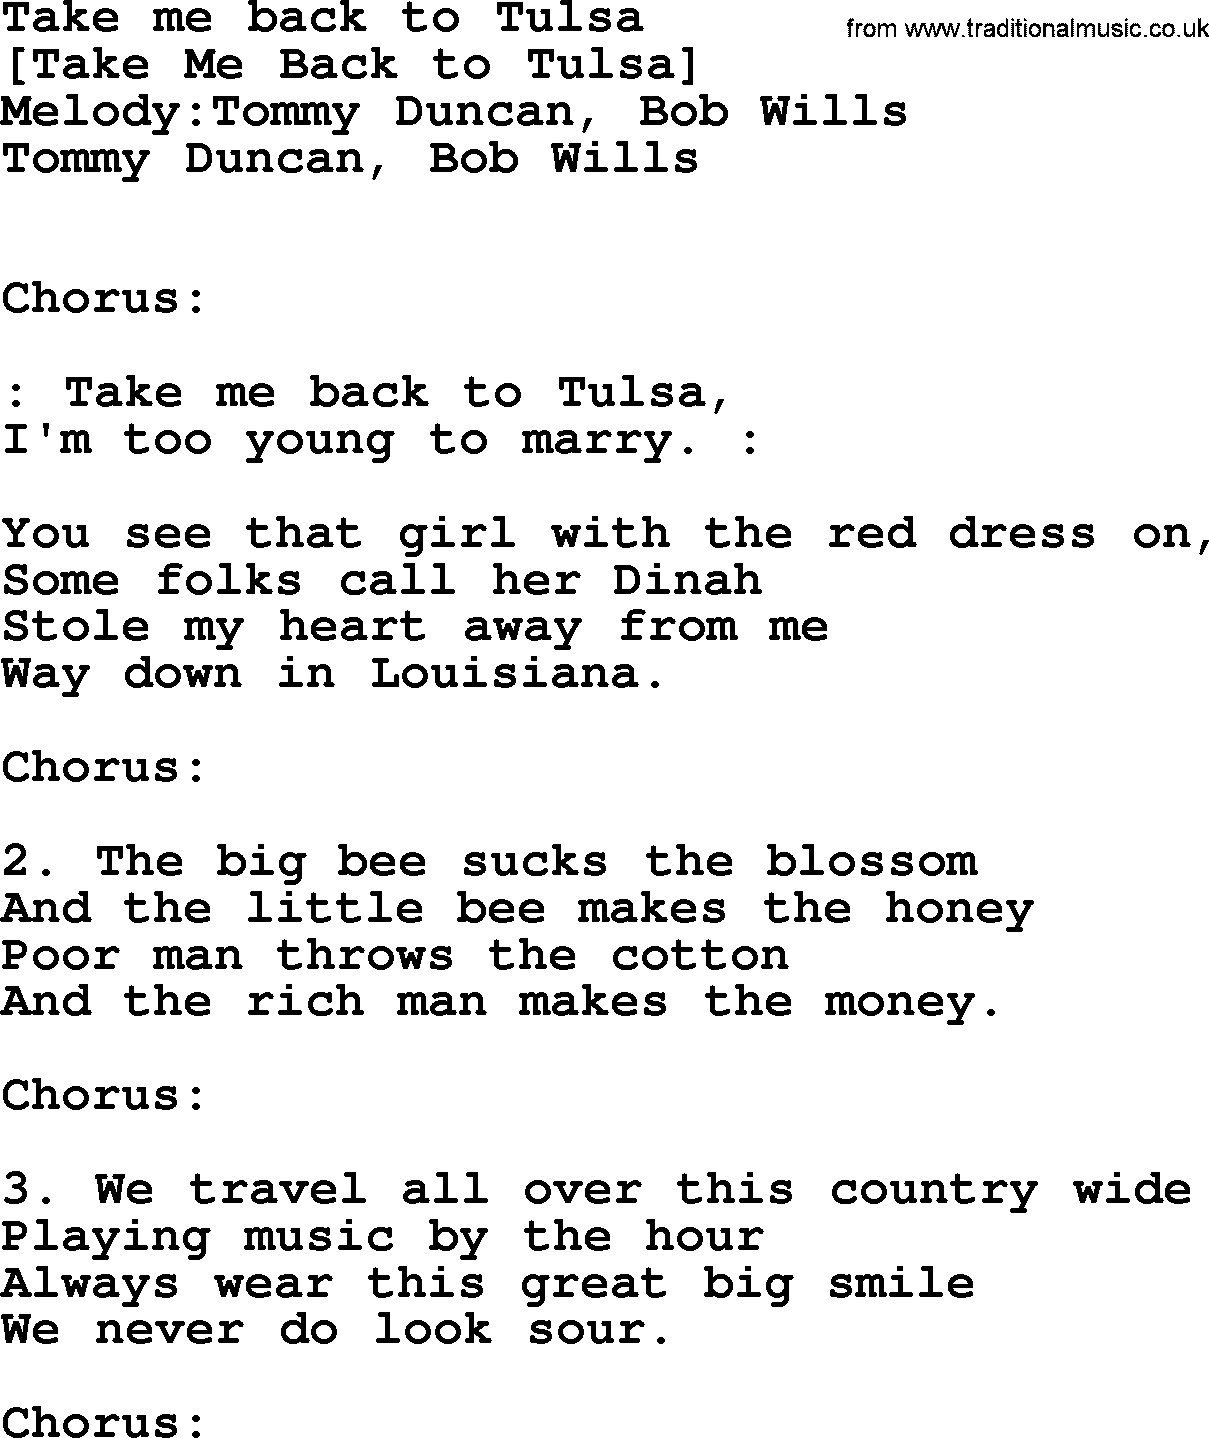 Old American Song: Take Me Back To Tulsa, lyrics